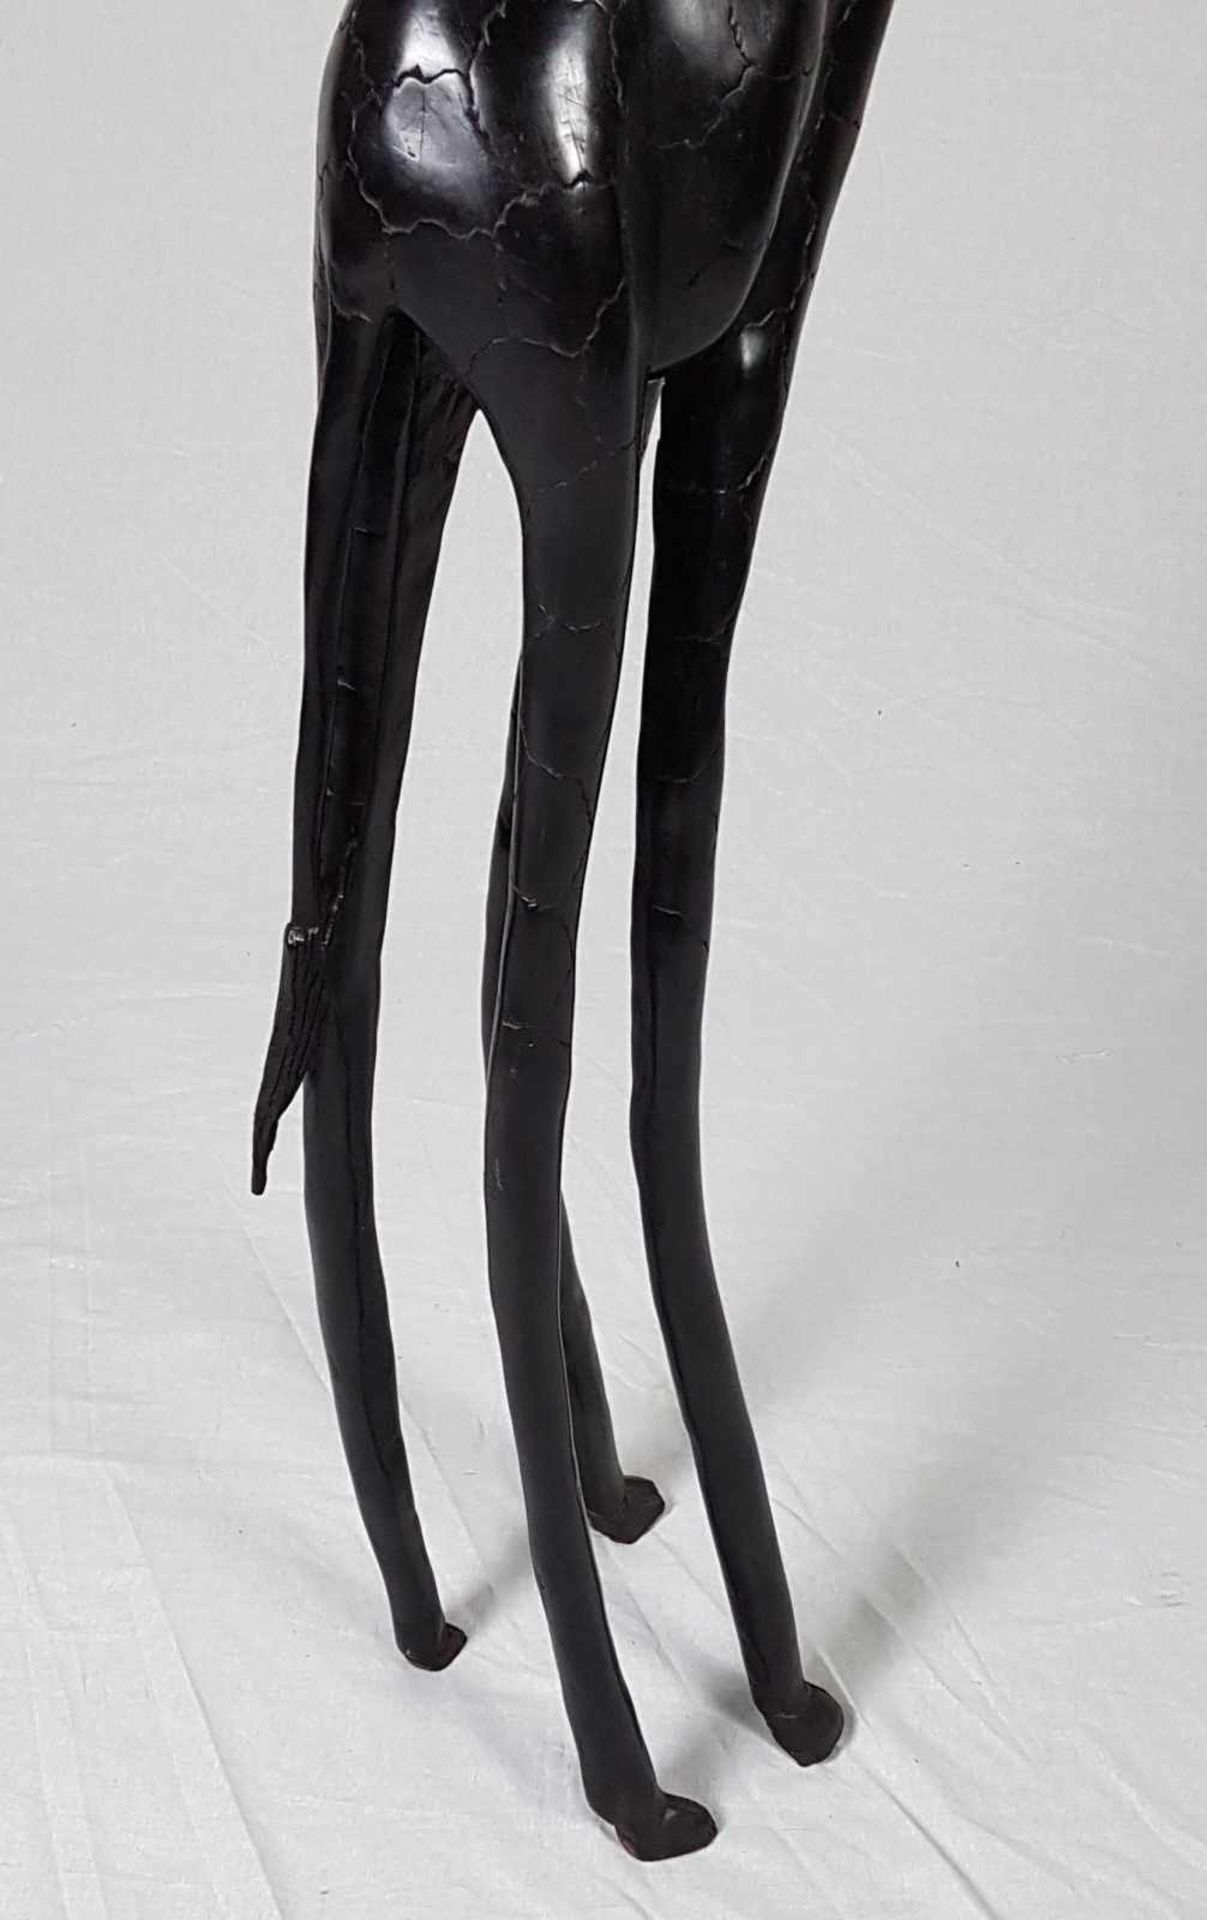 Tierskulptur "Giraffe" - vollplastische Tierfigur aus Ebenholz,ca.170x30cm,Gewicht ca.12,5kg, - Bild 2 aus 8